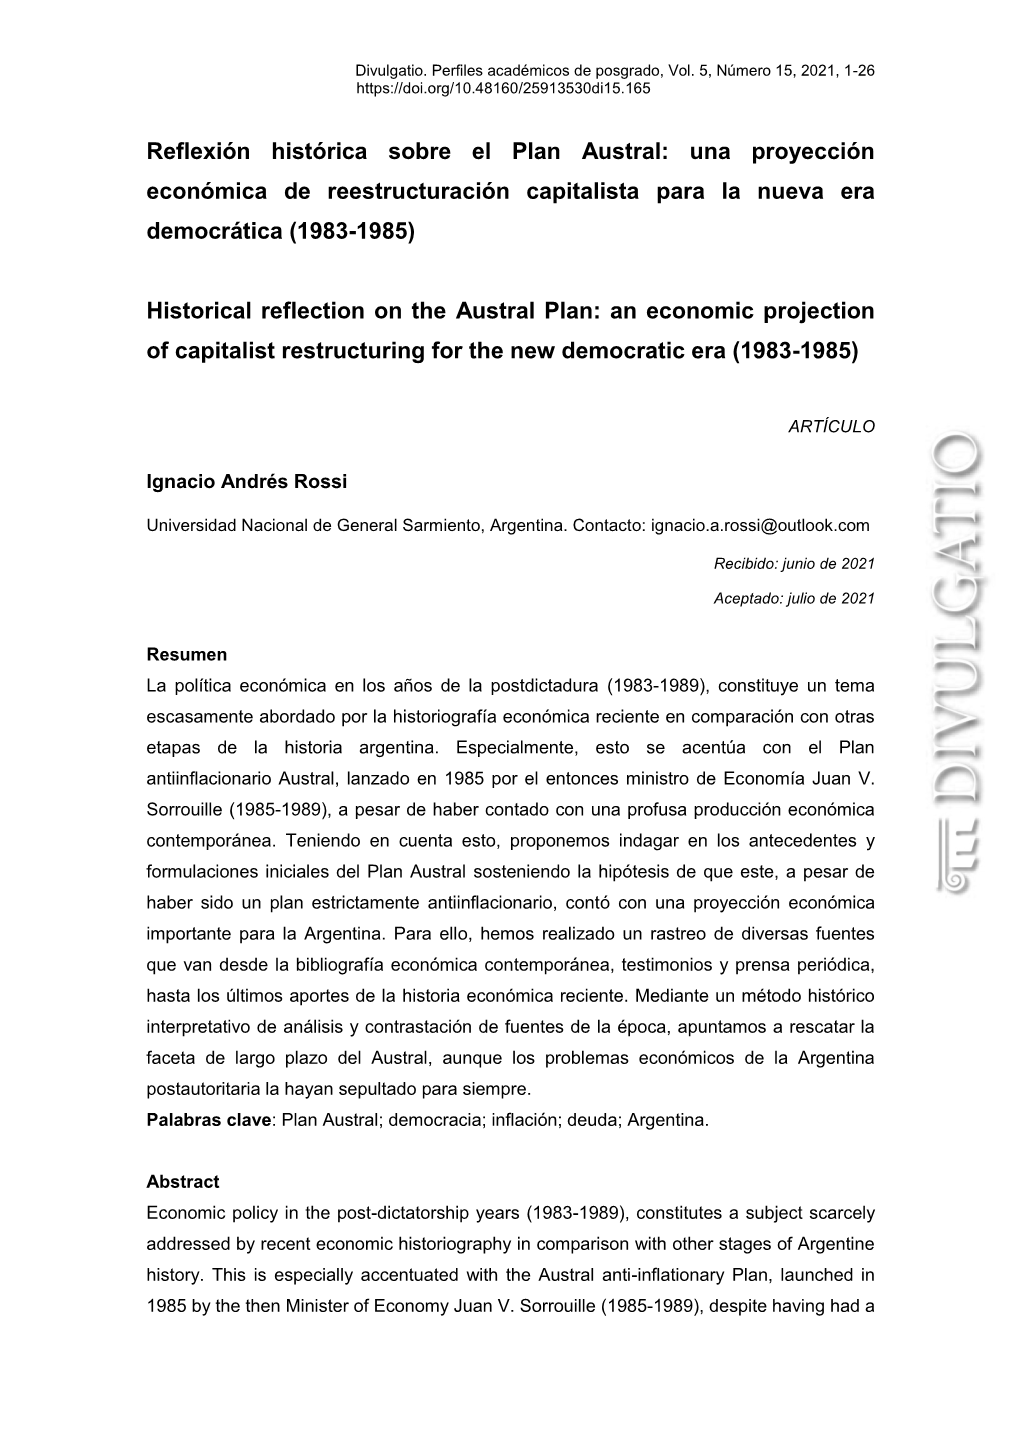 Reflexión Histórica Sobre El Plan Austral: Una Proyección Económica De Reestructuración Capitalista Para La Nueva Era Democrática (1983-1985)